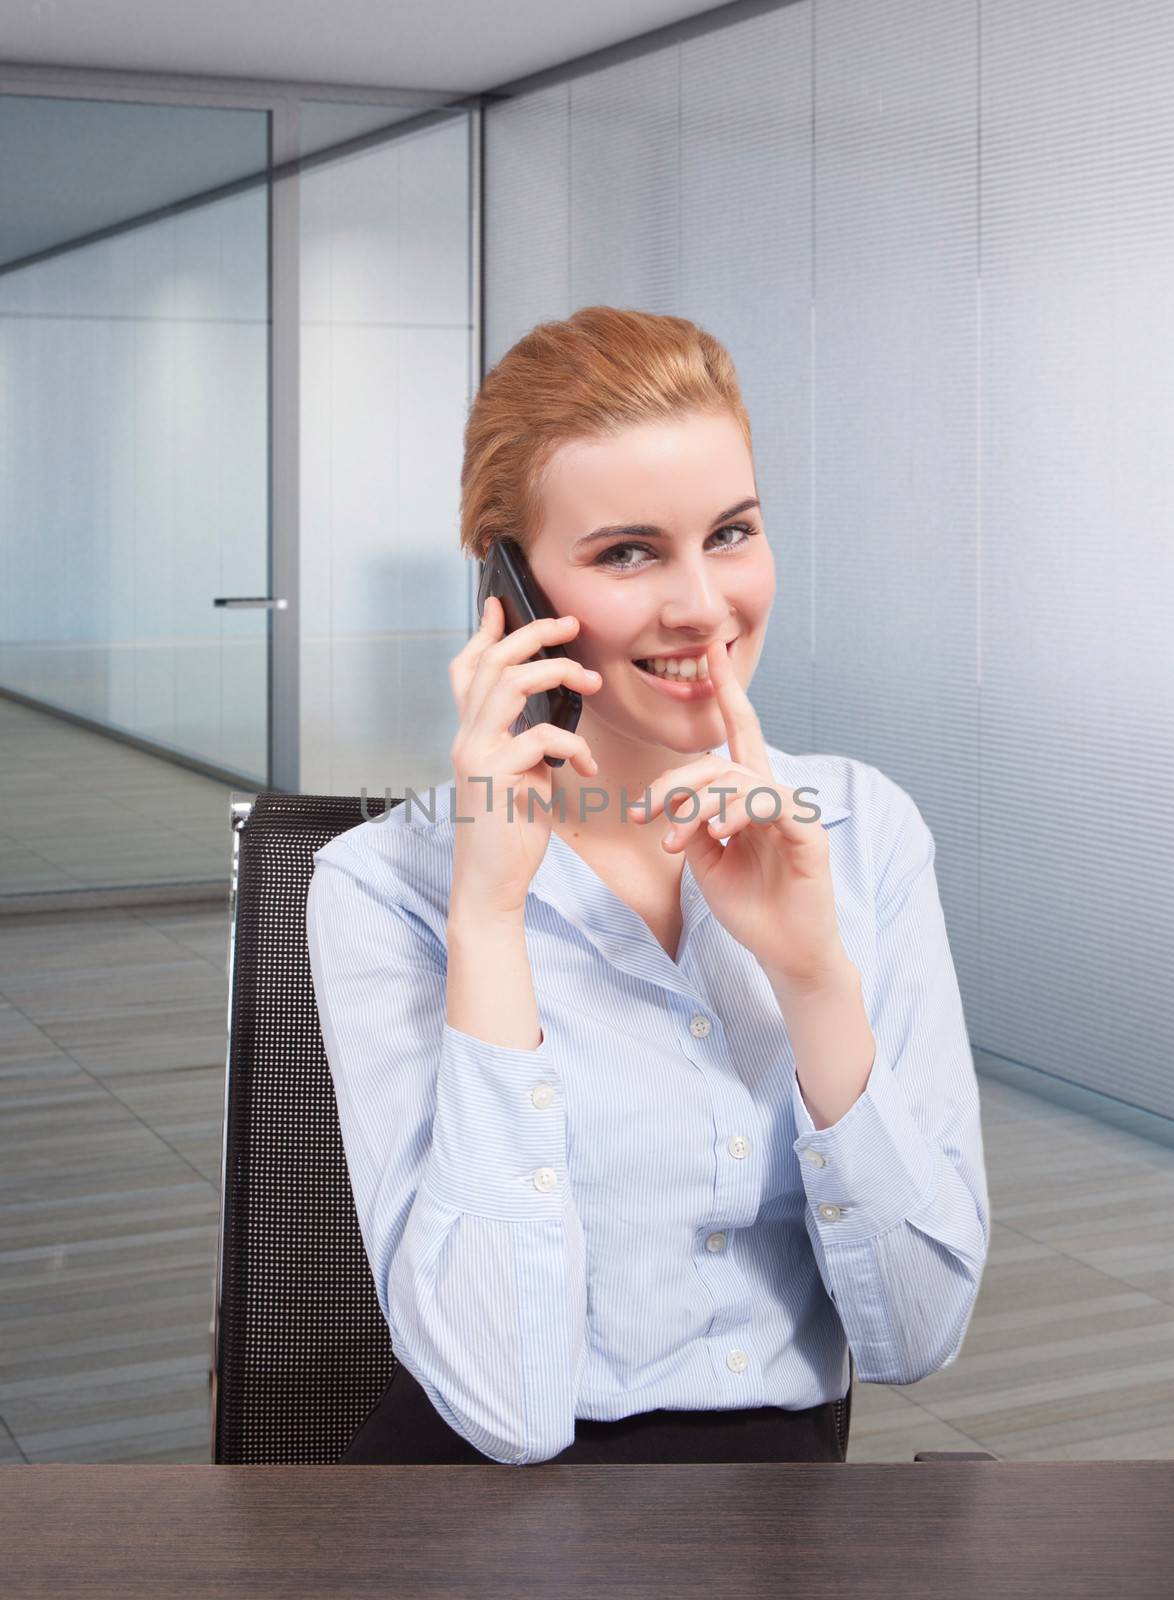 don't disturbe businesswoman at phone by matteobragaglio